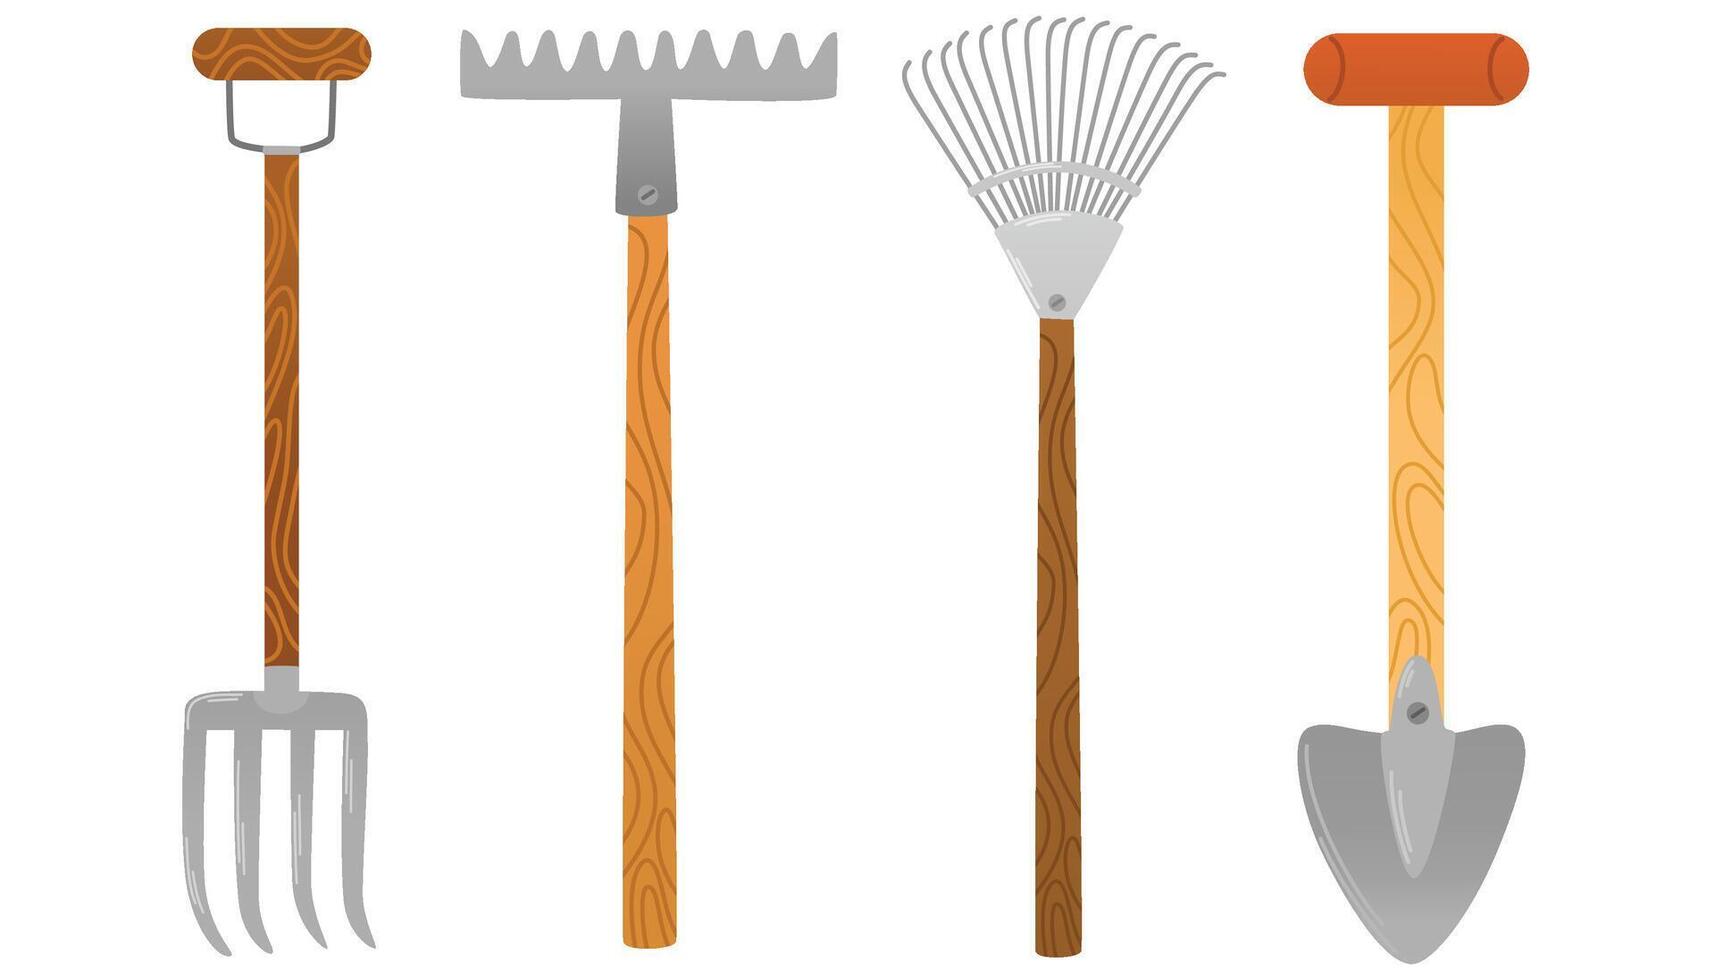 jardinería artículos colocar. agrícola y jardín herramientas para primavera trabajar. pala, rastrillo, azada. vector mano dibujar ilustraciones aislado en blanco